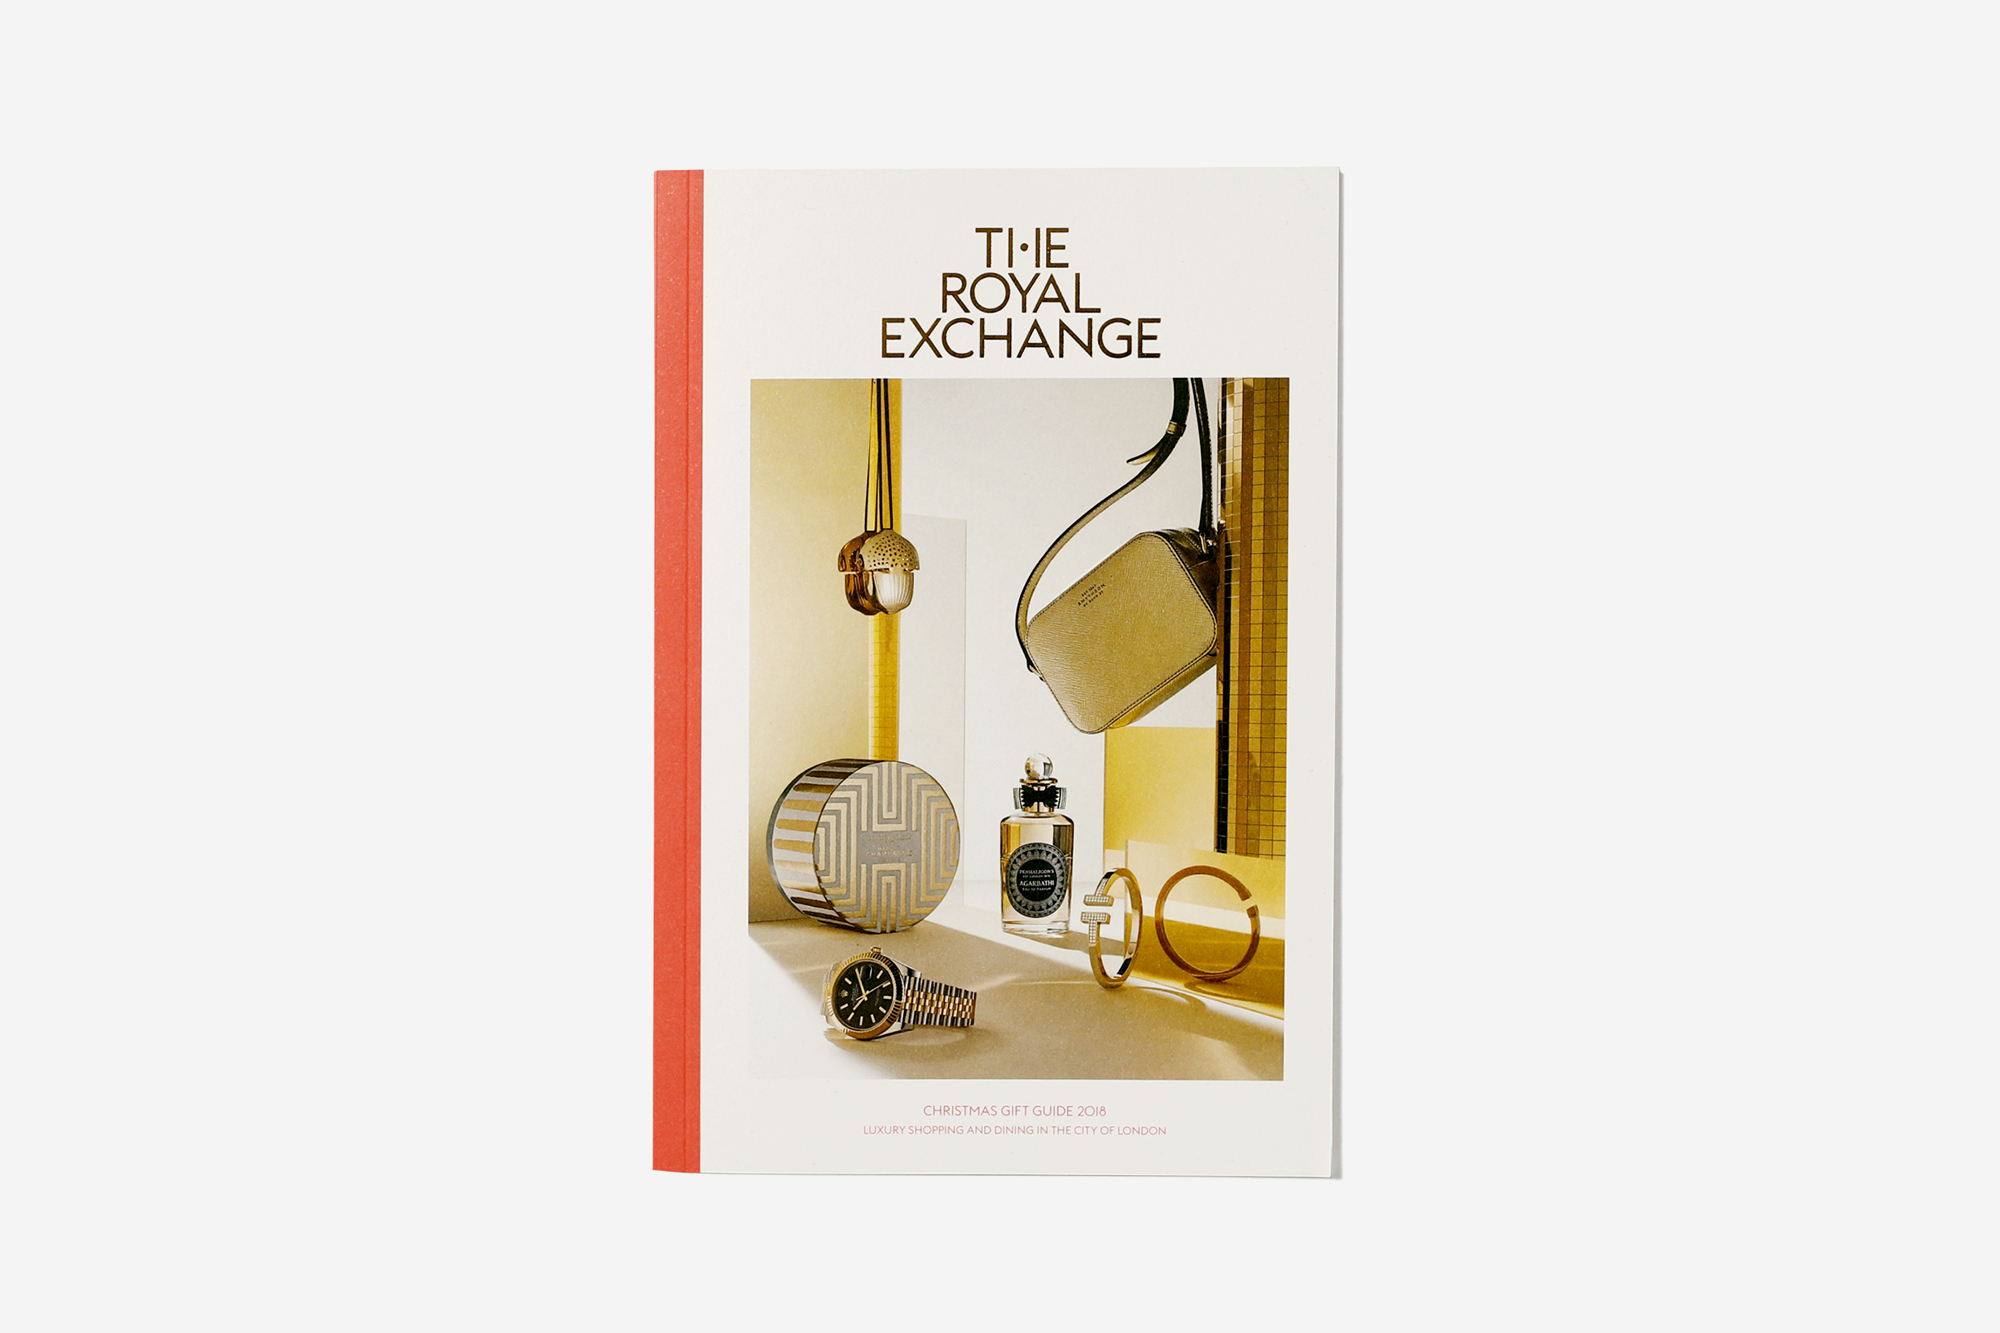 The Royal Exchange Christmas Gift Guide 2018